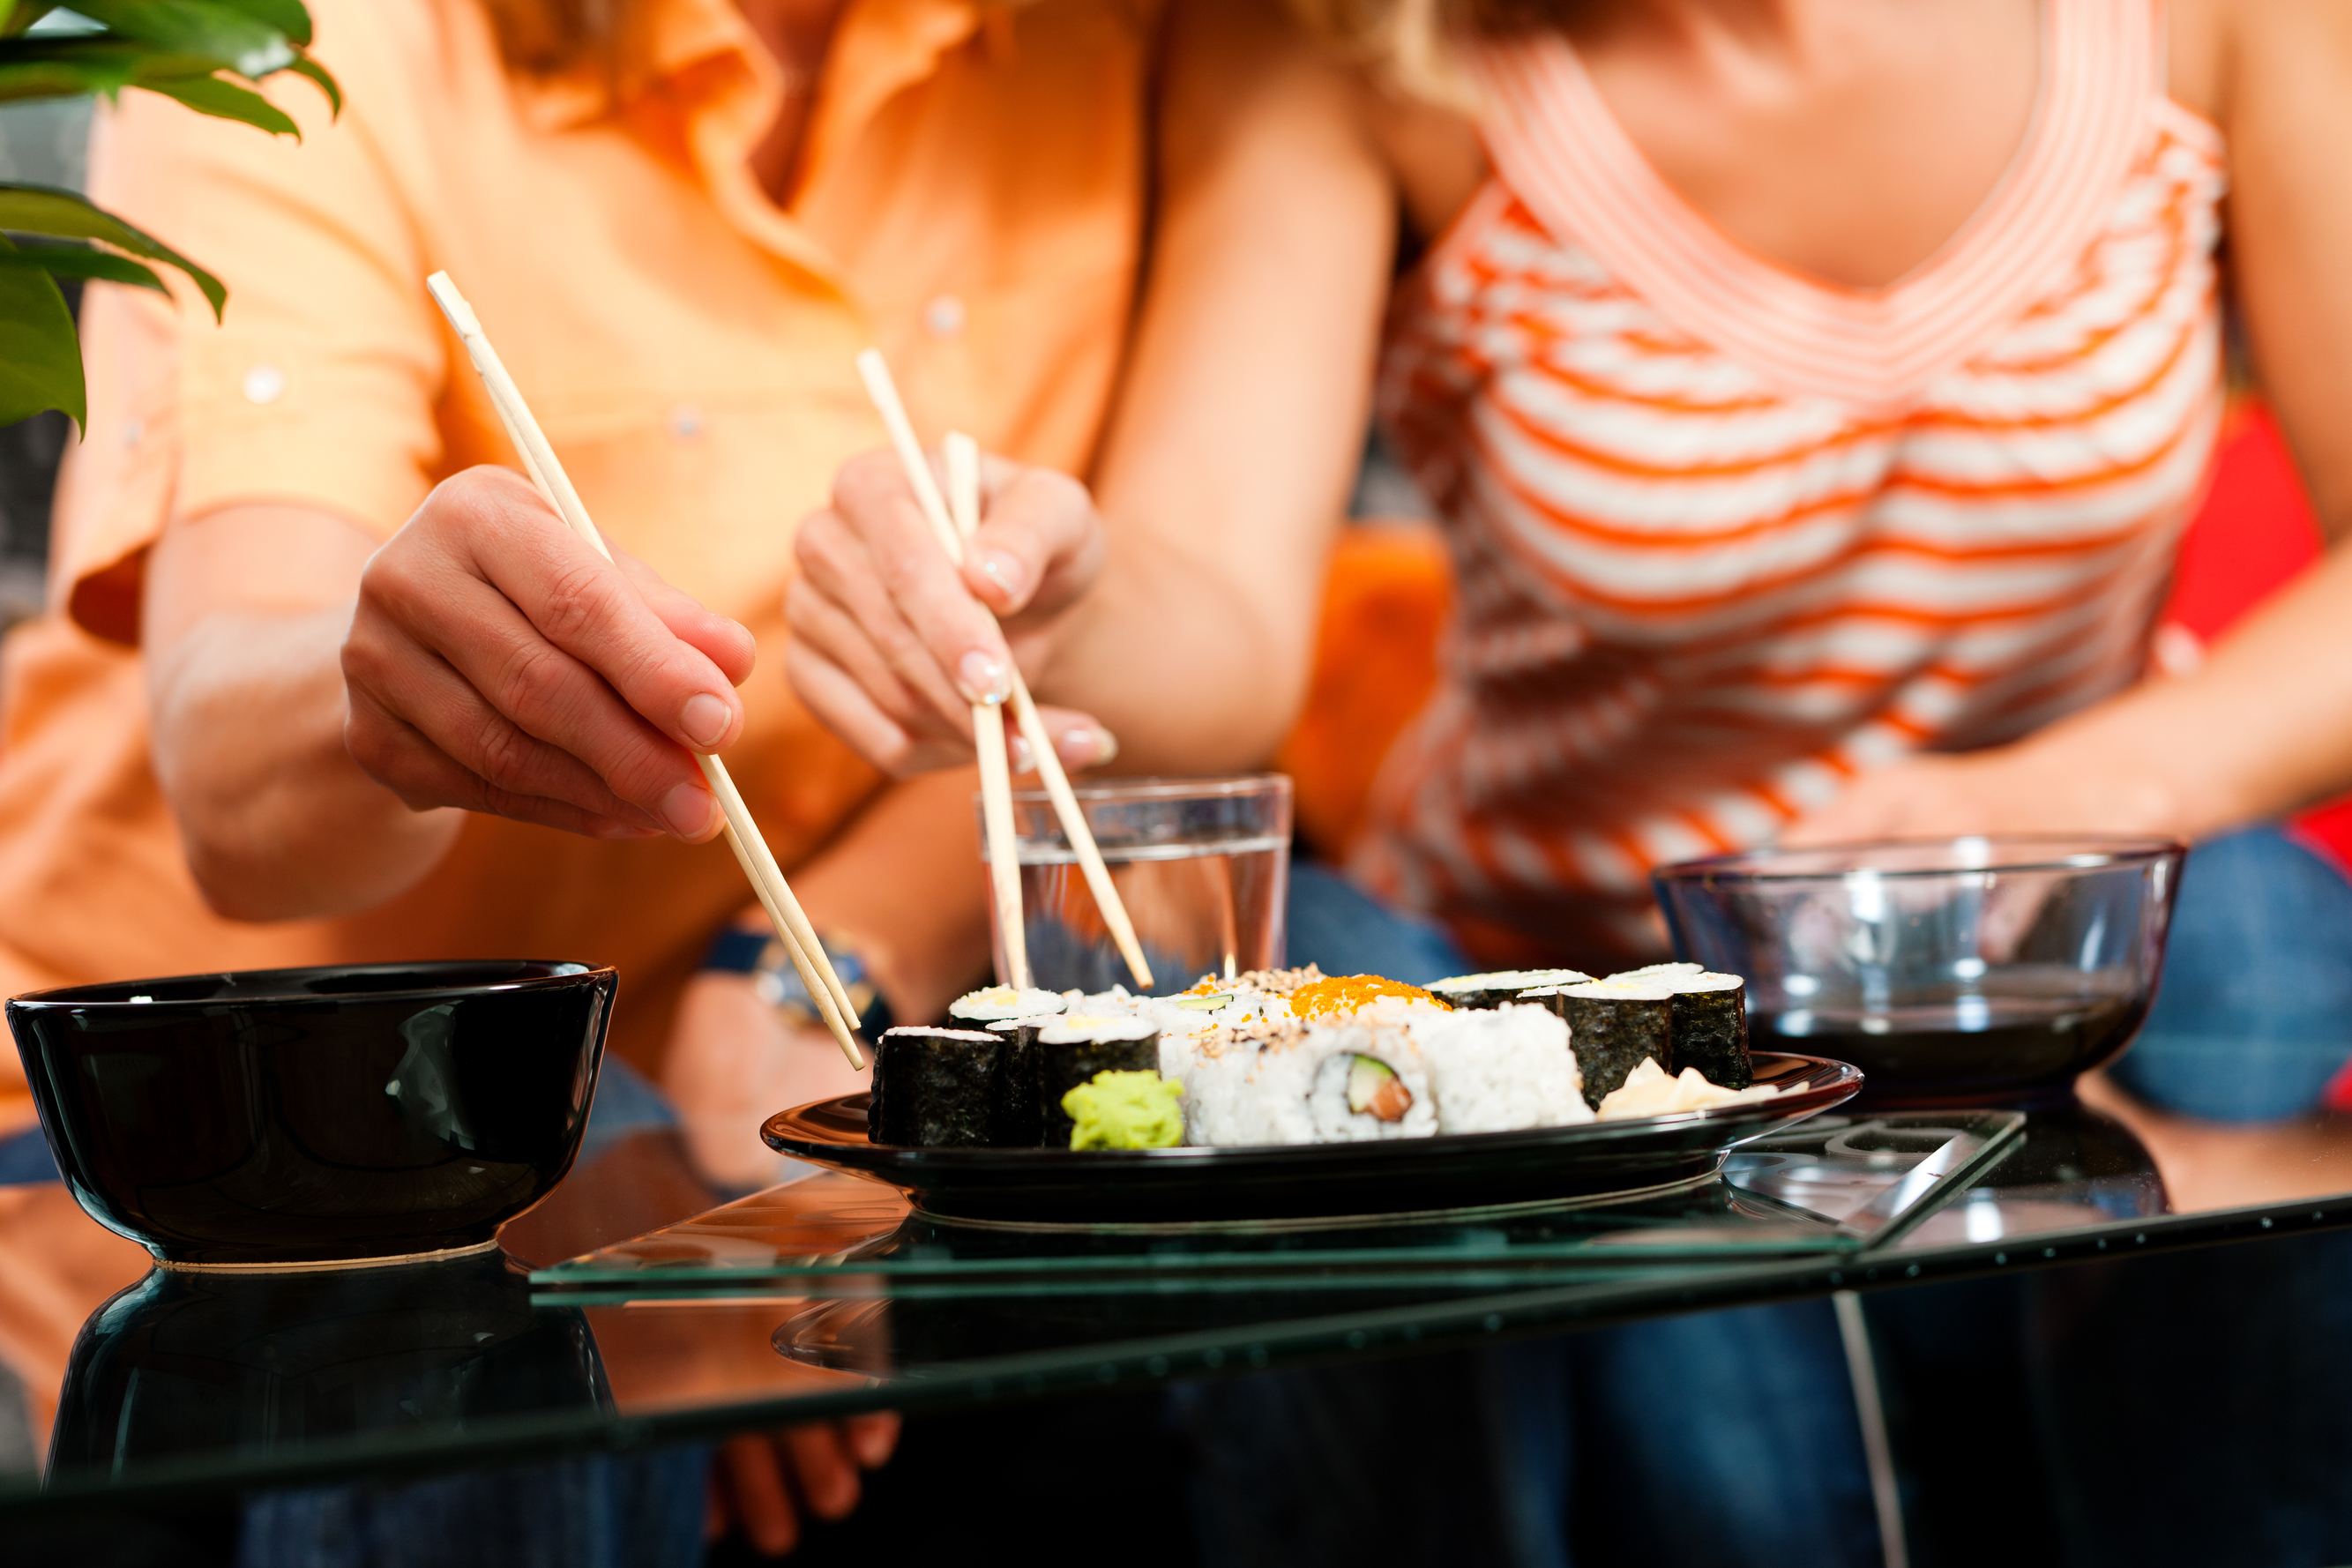  הסוד היפני להרזיה – איך זה שהיפנים אוכלים יותר מאתנו ונשארים רזים?